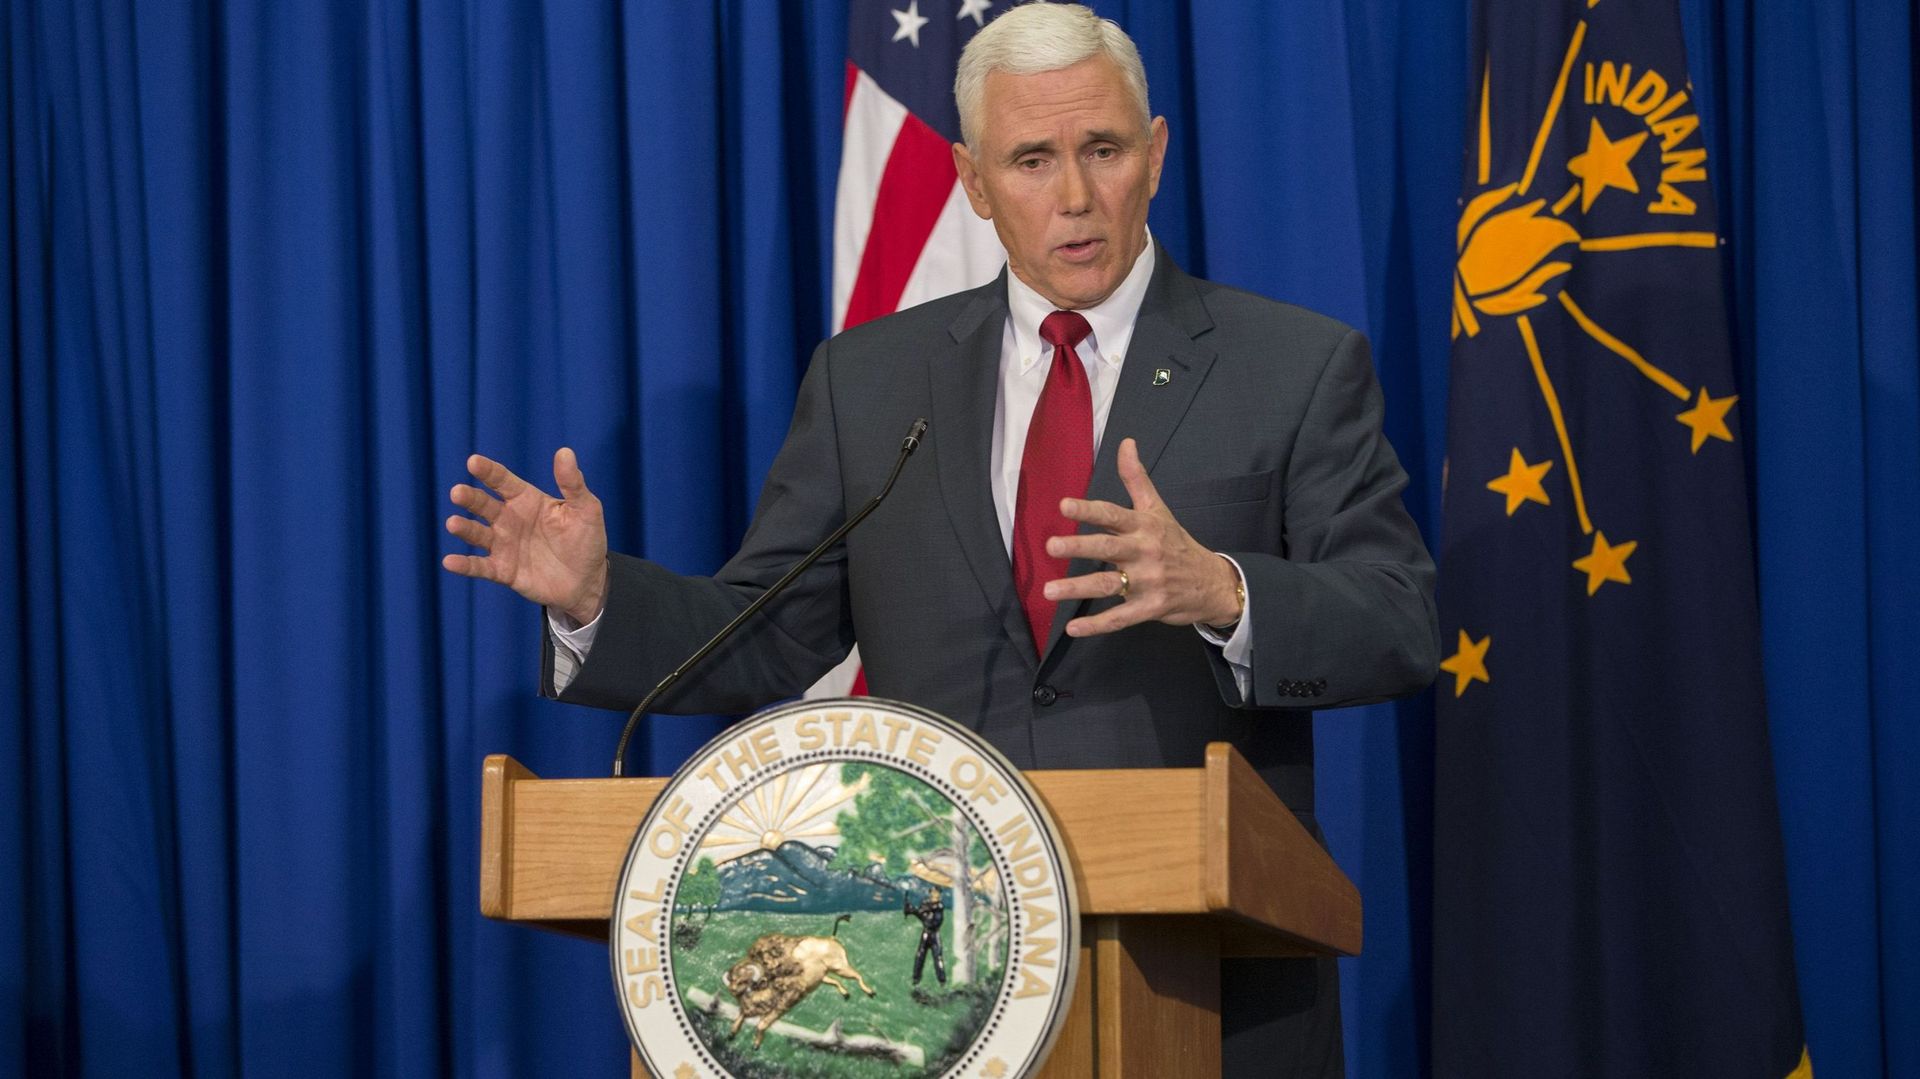 Mike Spence, gouverneur de l'Indiana s'exprime sur le controversé "Religious Freedom Restoration Act"